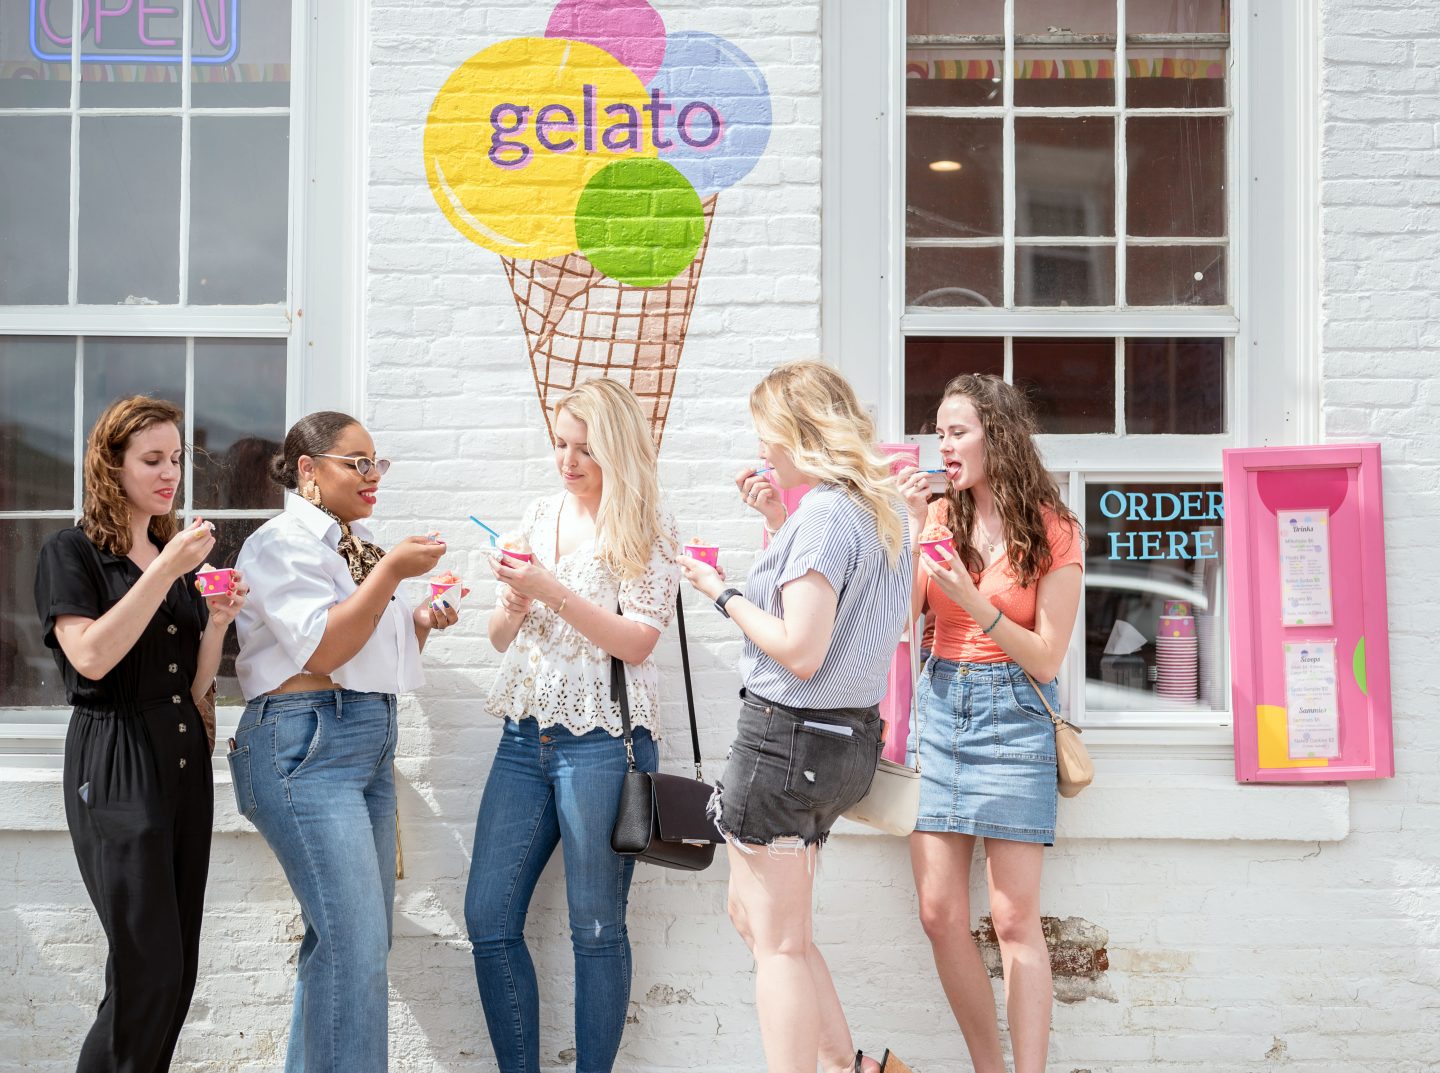 Girls outside Spotz Gelato eating gelato